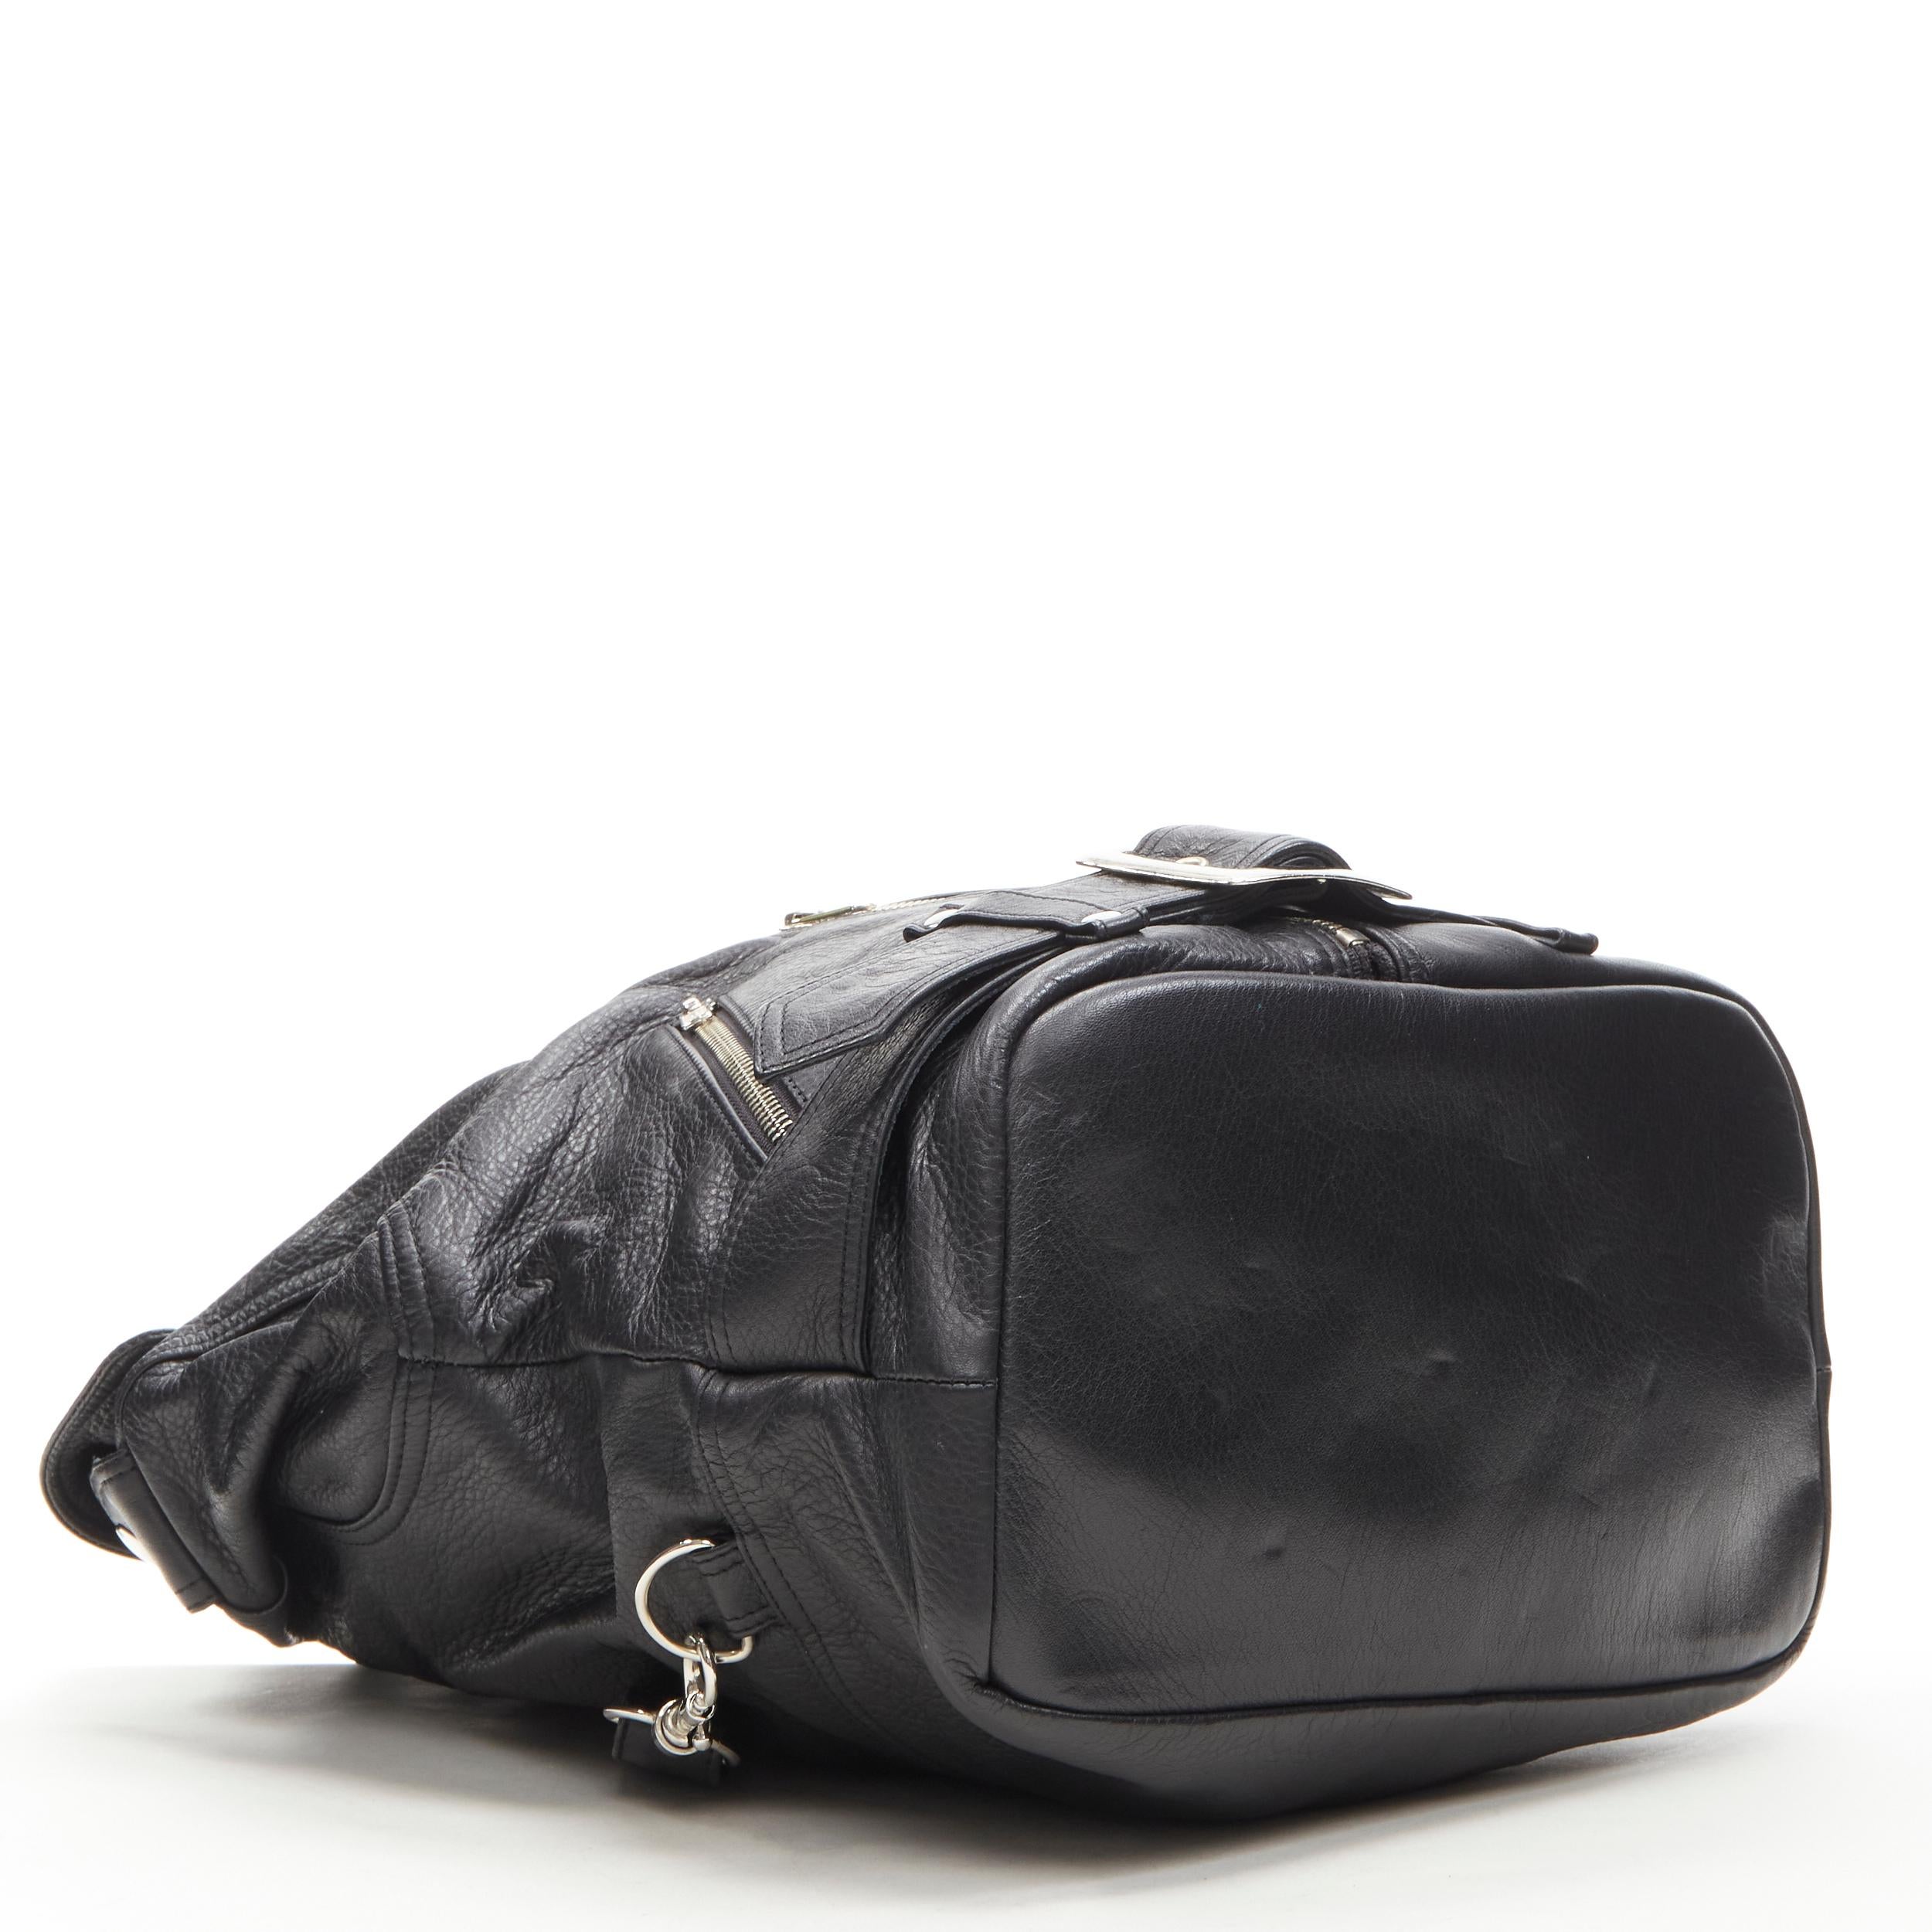 Black JEREMY SCOTT black leather biker jacket design bucket backpack bag